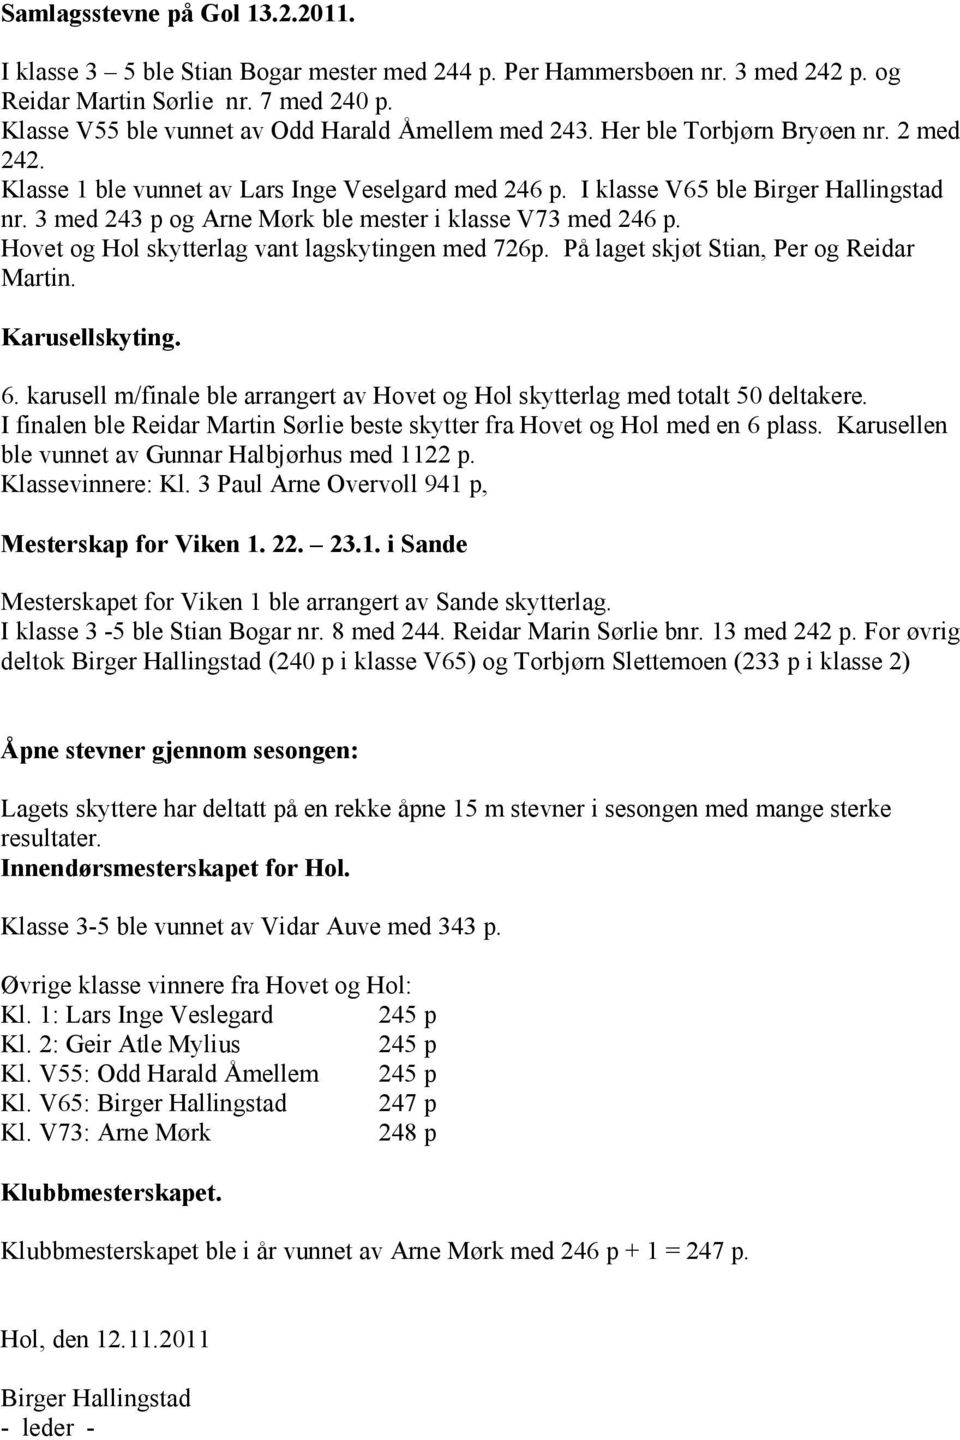 3 med 243 p og Arne Mørk ble mester i klasse V73 med 246 p. Hovet og Hol skytterlag vant lagskytingen med 726p. På laget skjøt Stian, Per og Reidar Martin. Karusellskyting. 6.